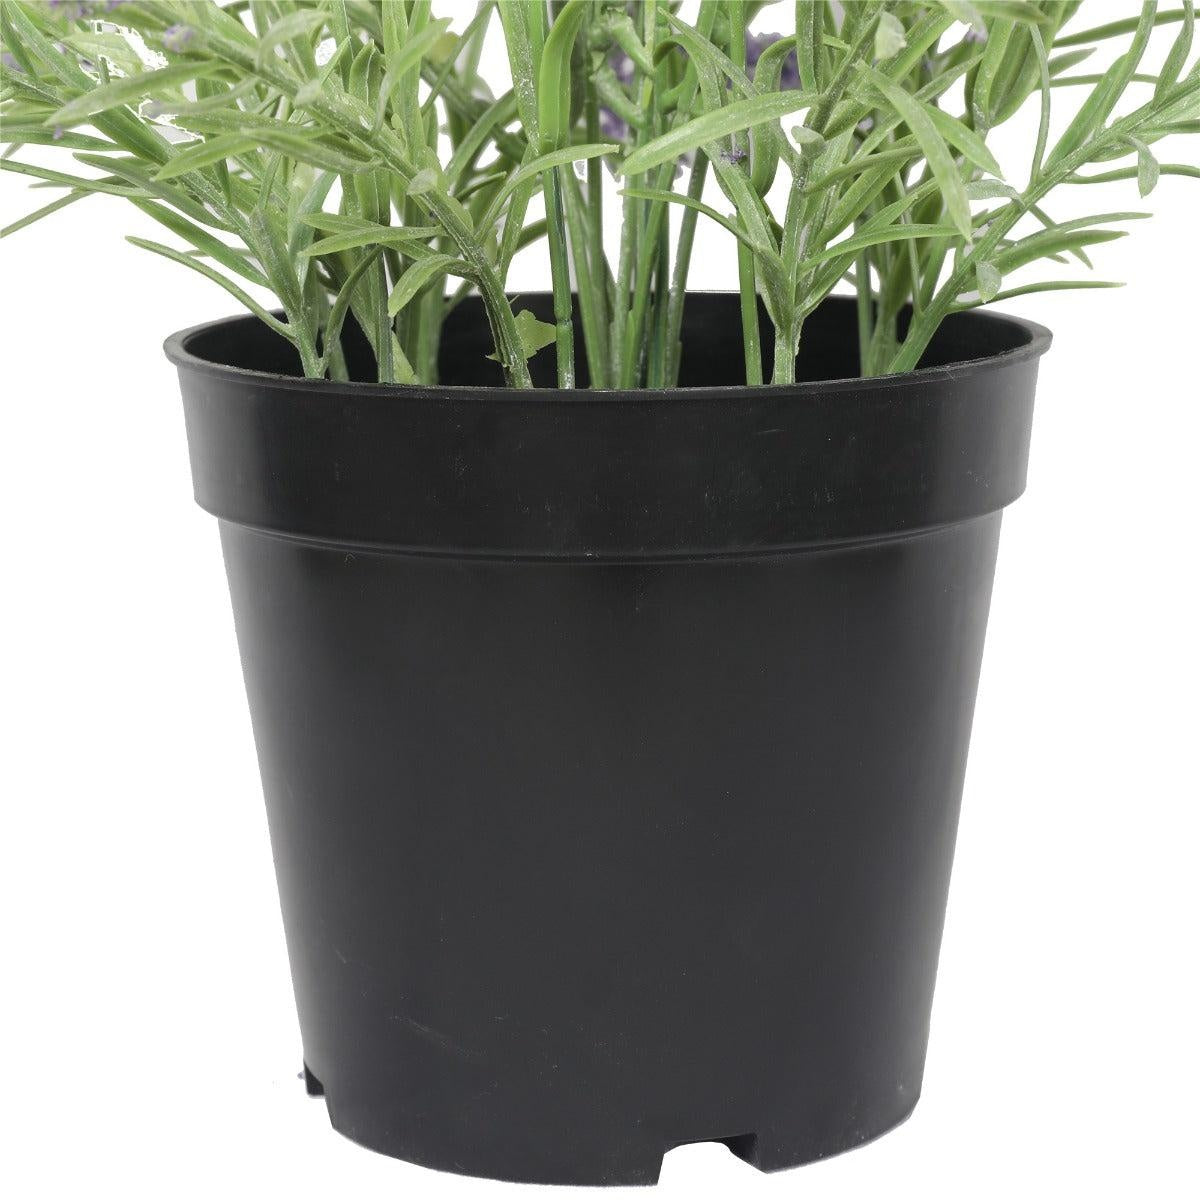 Artificial Lavender Plant 40cm Deals499